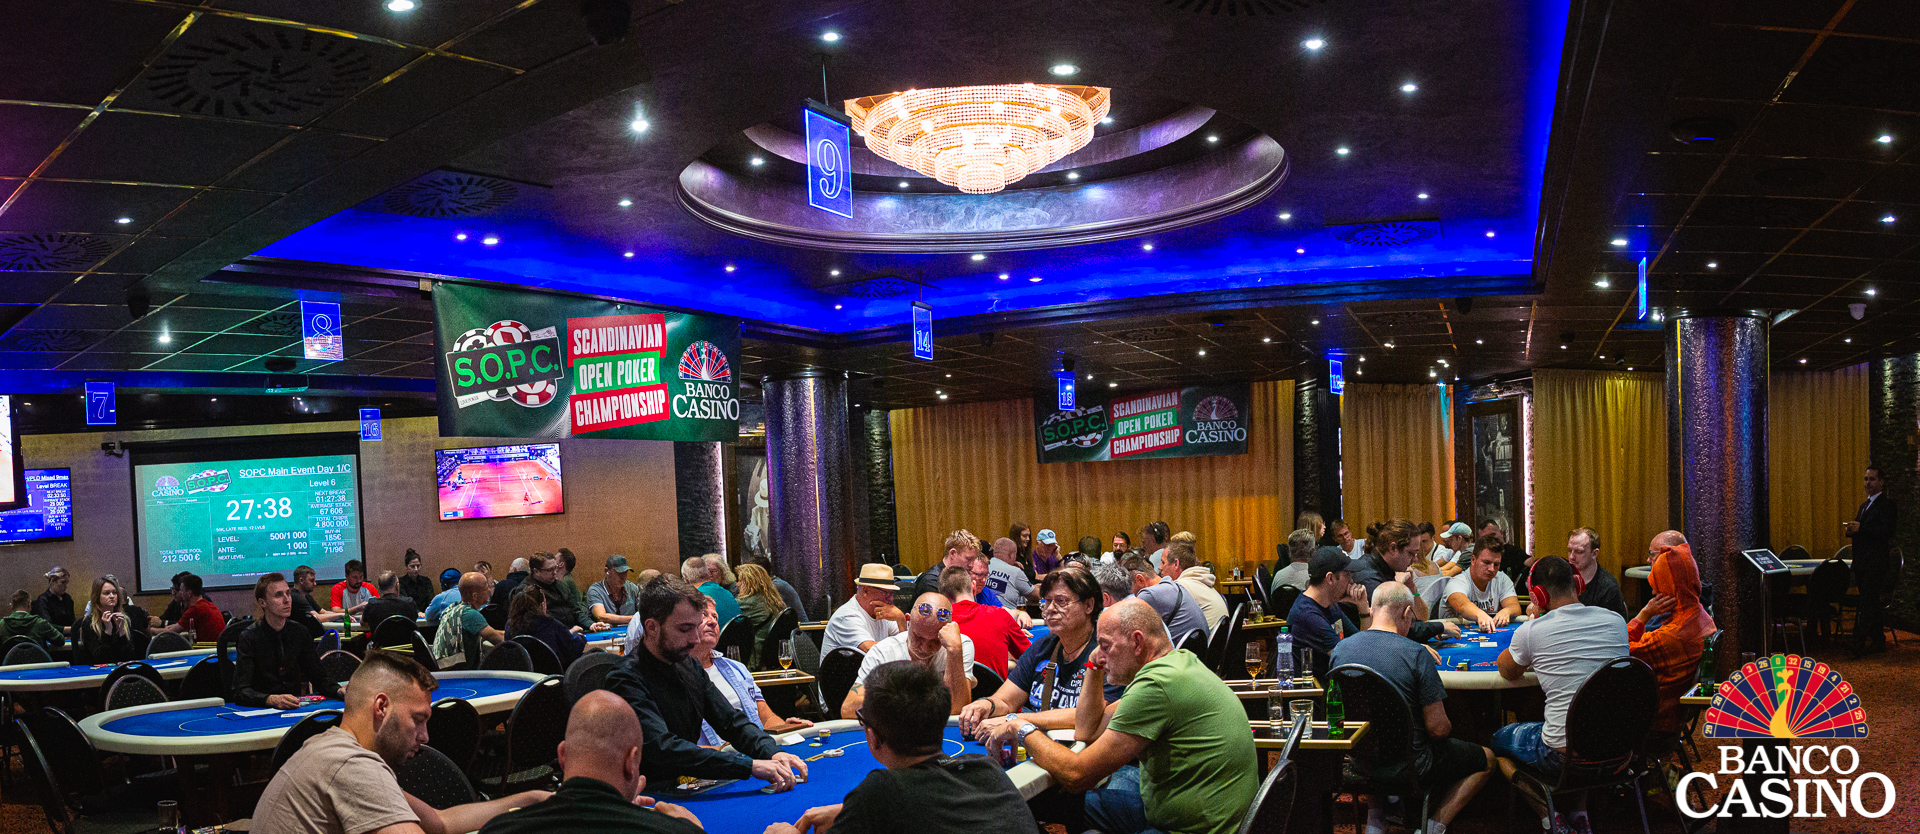 SOPC Main Event € 250.000 GTD – Die Nordländer greifen das Banco Casino an!